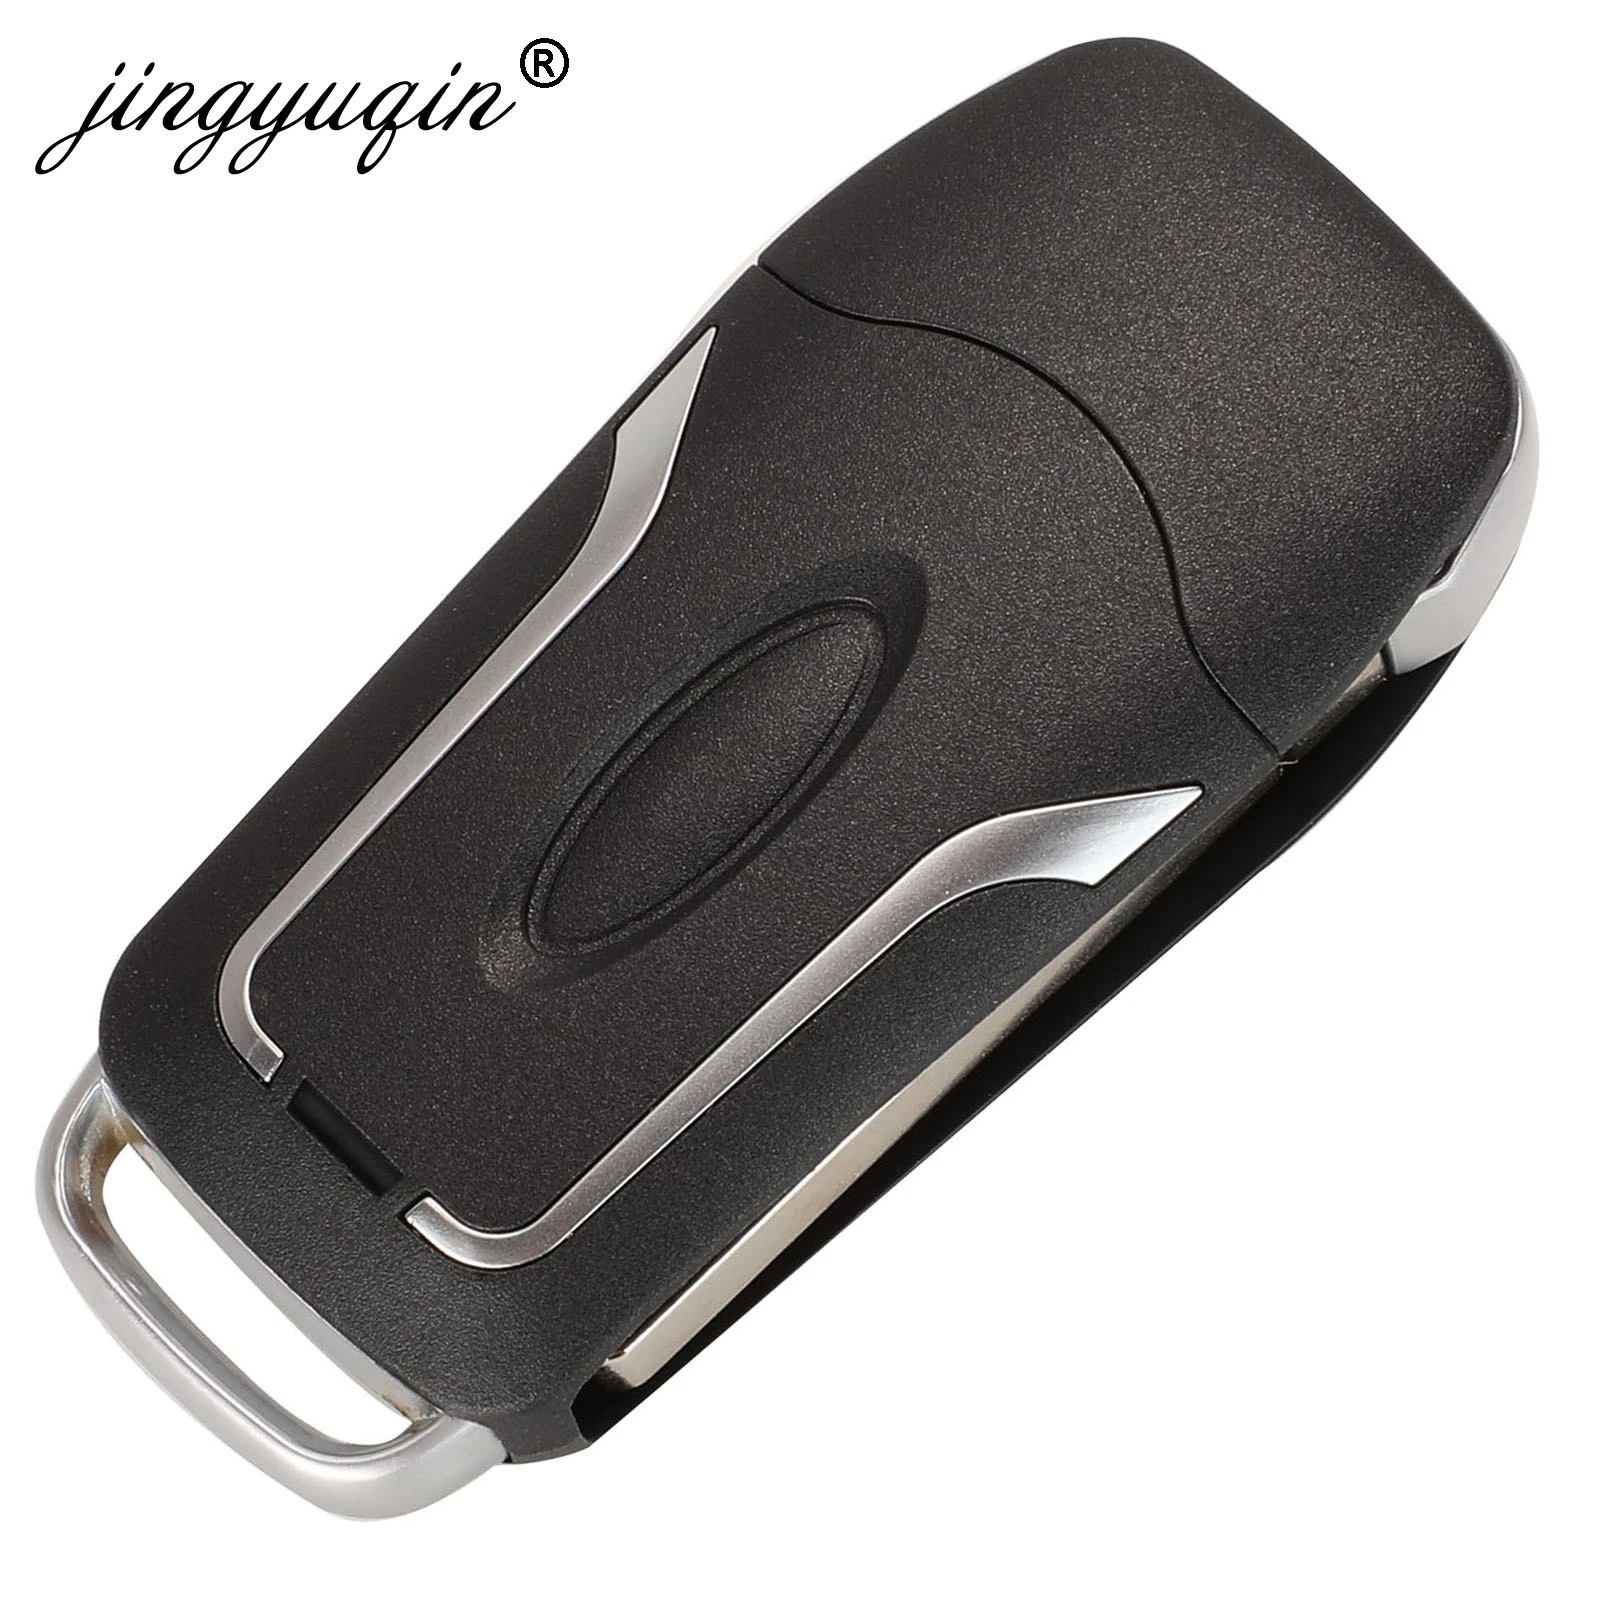 Jingyuqin 3 кнопки модифицированный Флип складной пульт дистанционного ключа автомобиля чехол для Ford Focus 2 3 Mondeo Fiesta управление Брелок чехол